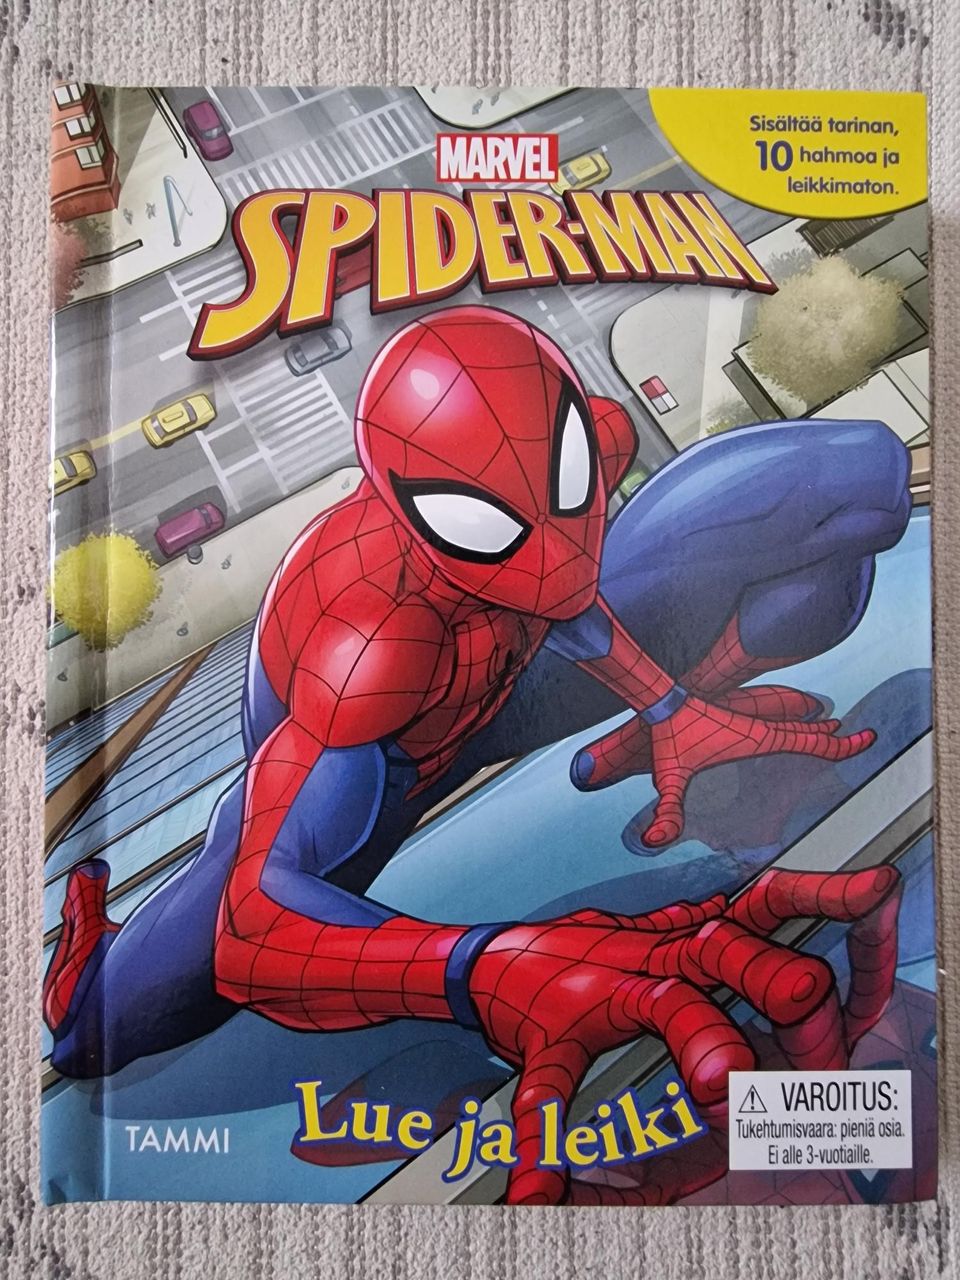 Spiderman kirja leluilla